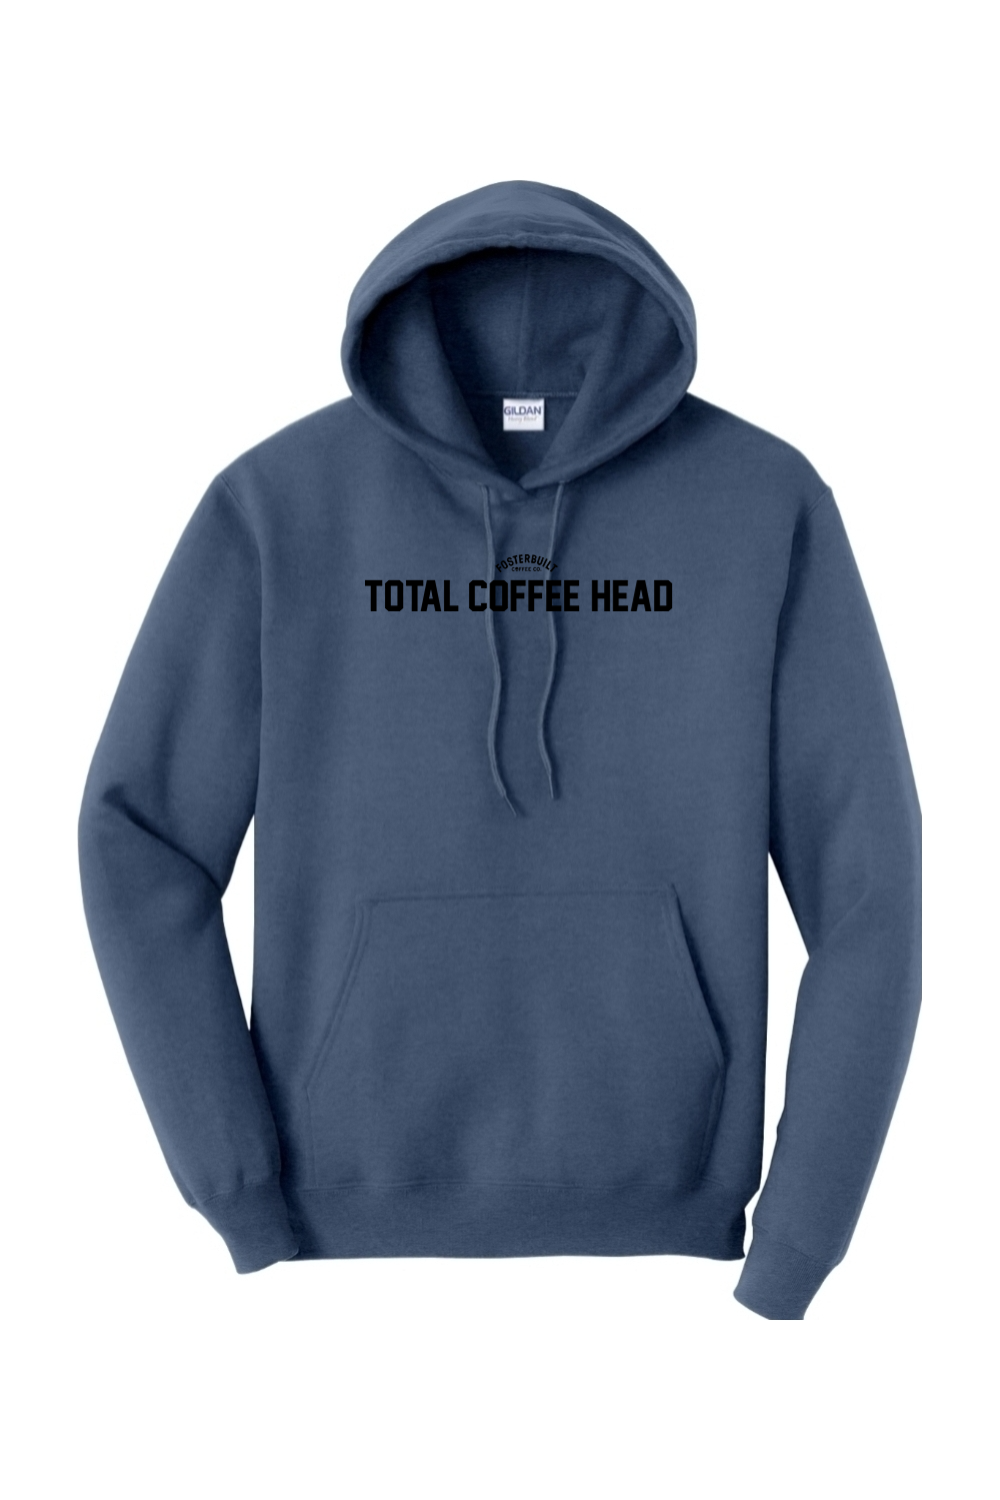 TOTAL COFFEE HEAD - Heavy Blend Hoodie